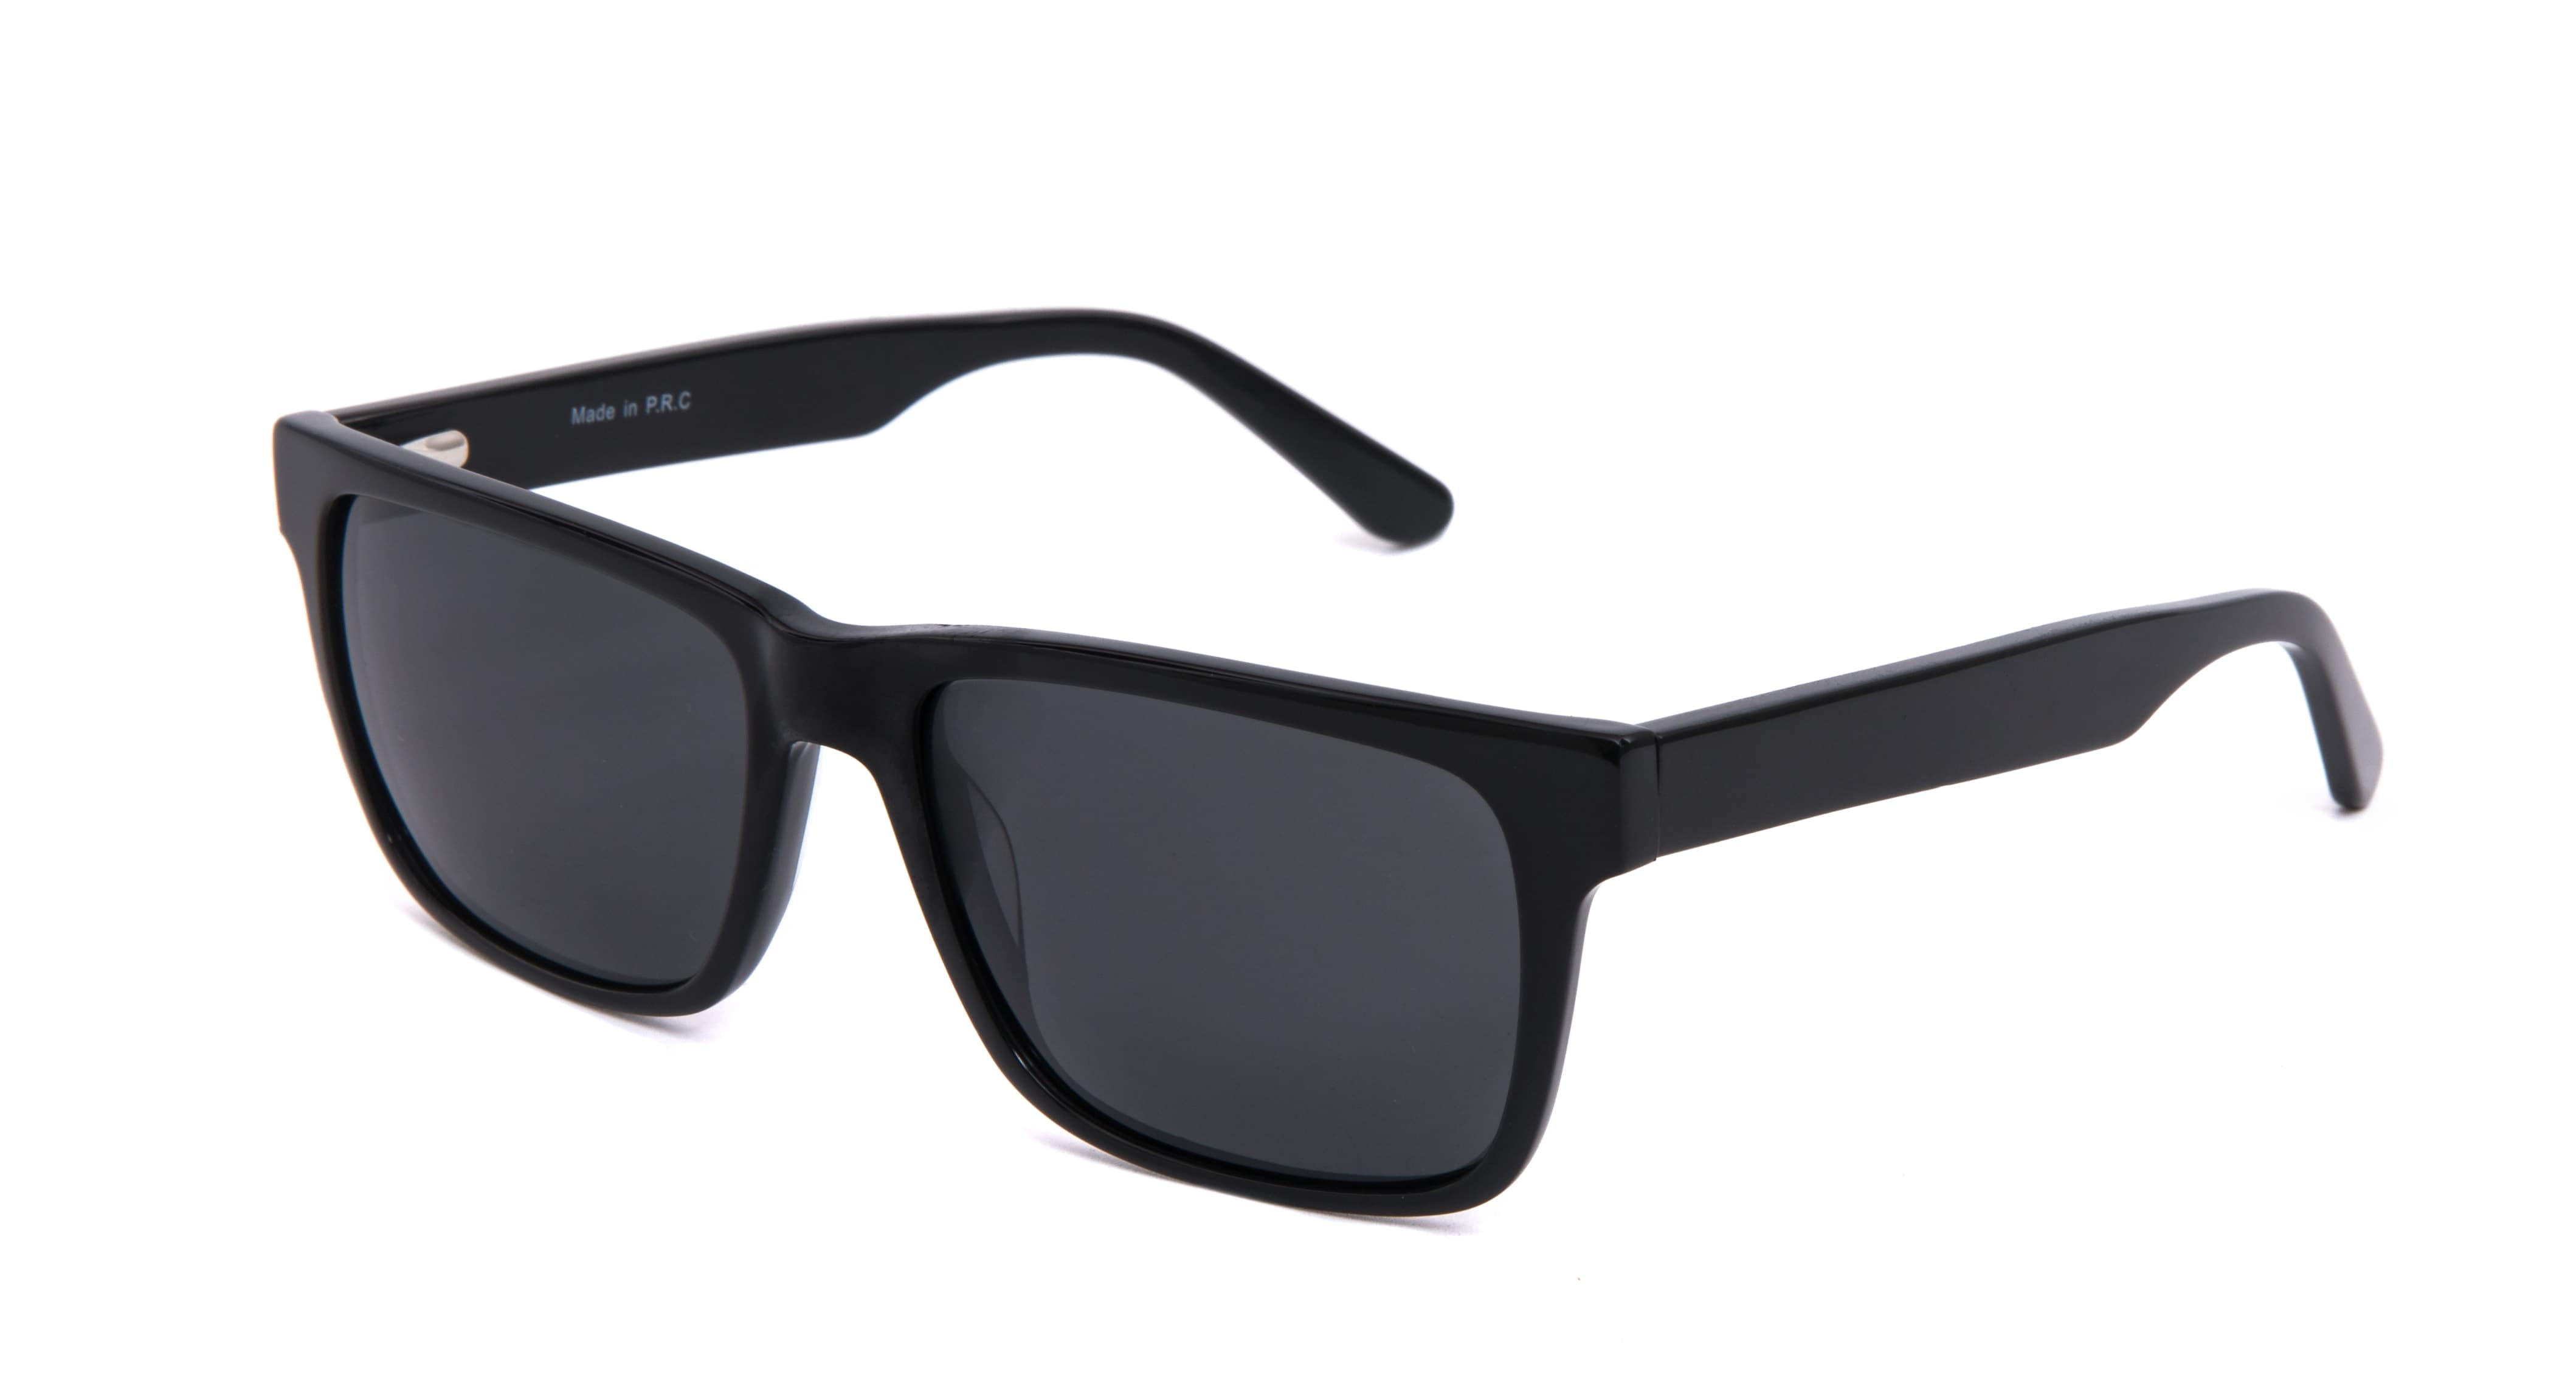 Polarized Fashion Sunglasses Women  Retro Small Square Sunglasses Men -  Fashion - Aliexpress